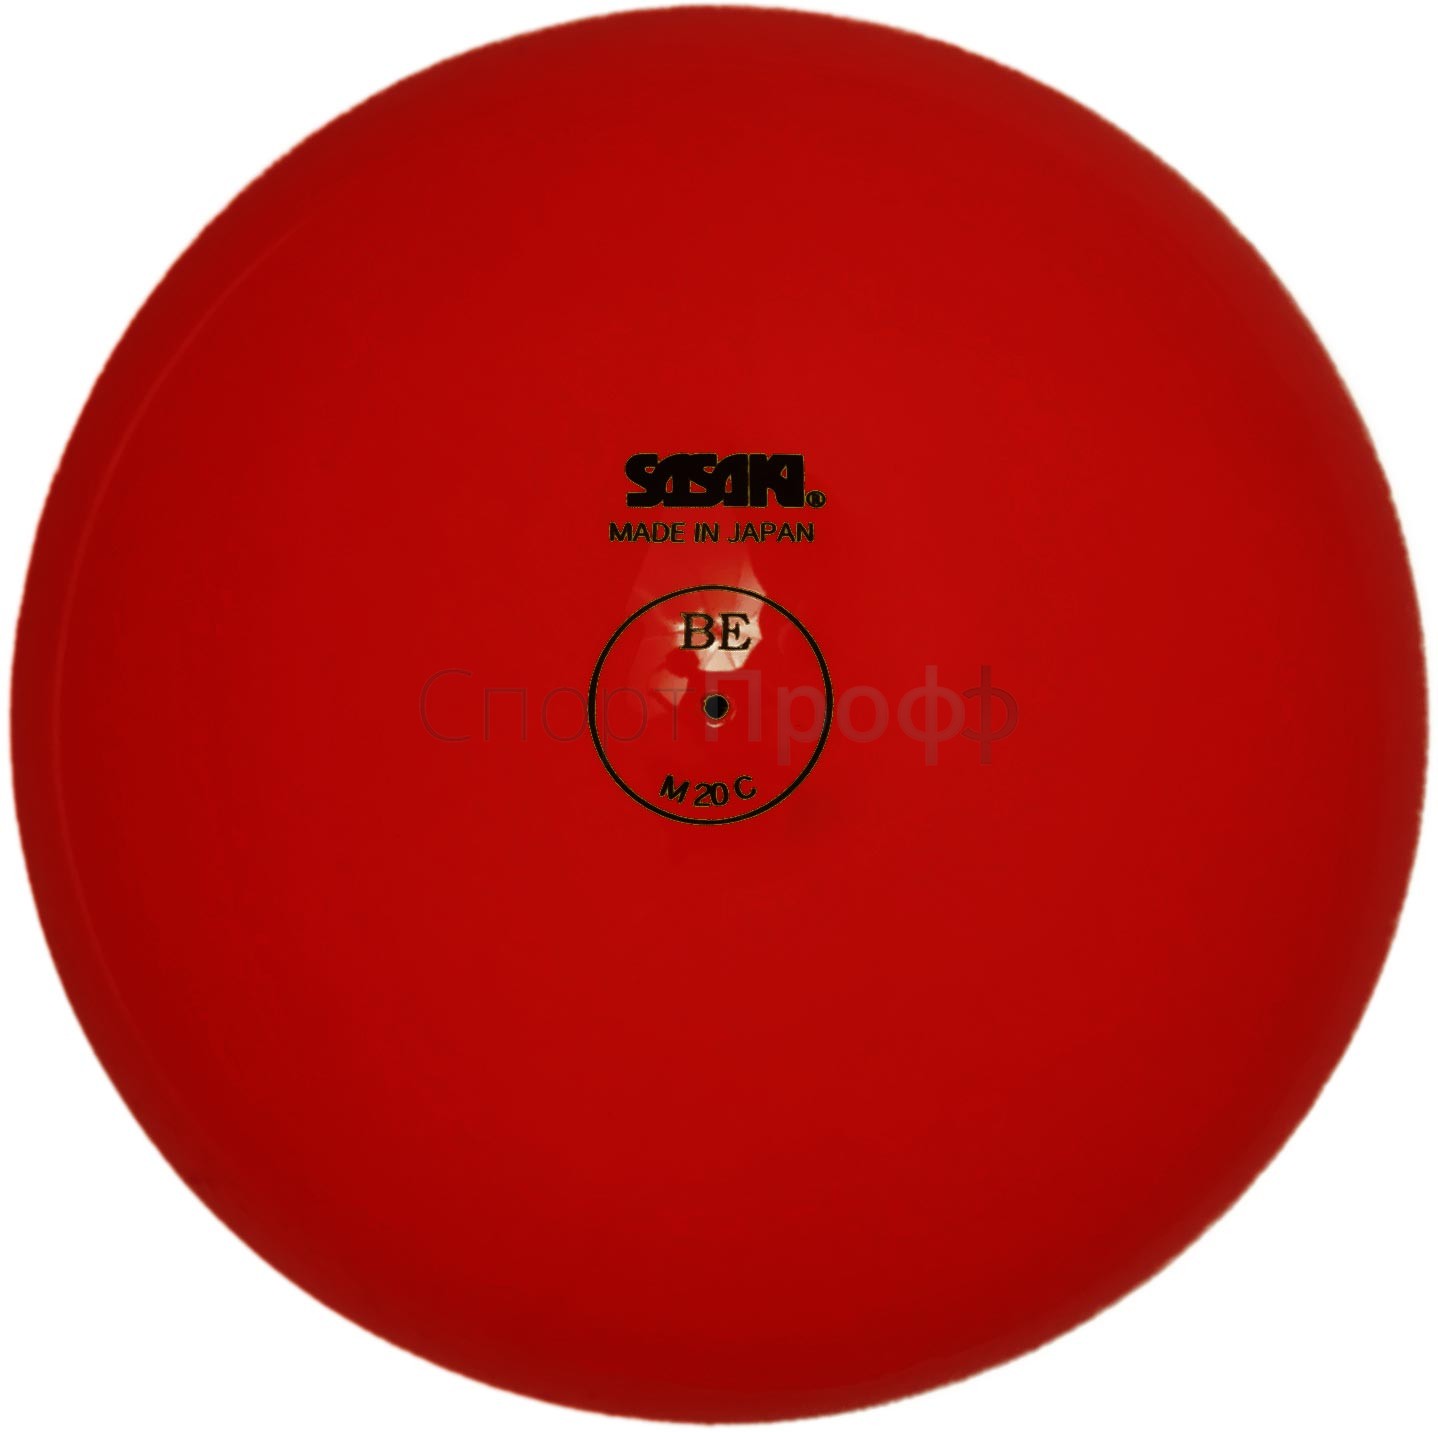 Мяч SASAKI M-20C 15 см. R (красный) для художественной гимнастики